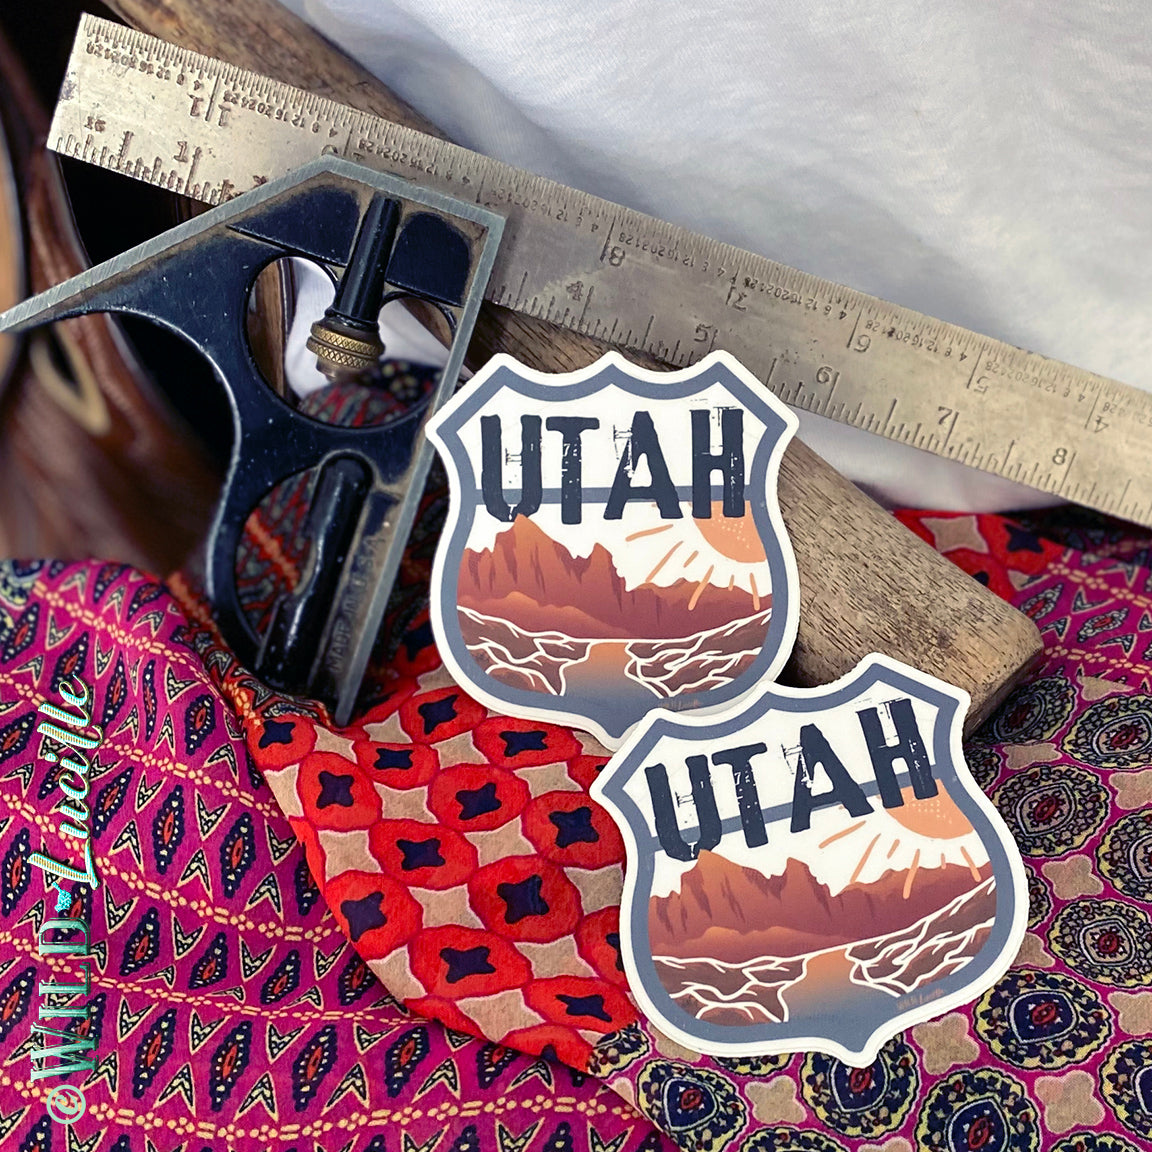 Destination Utah - Vinyl Souvenir Sticker Decals